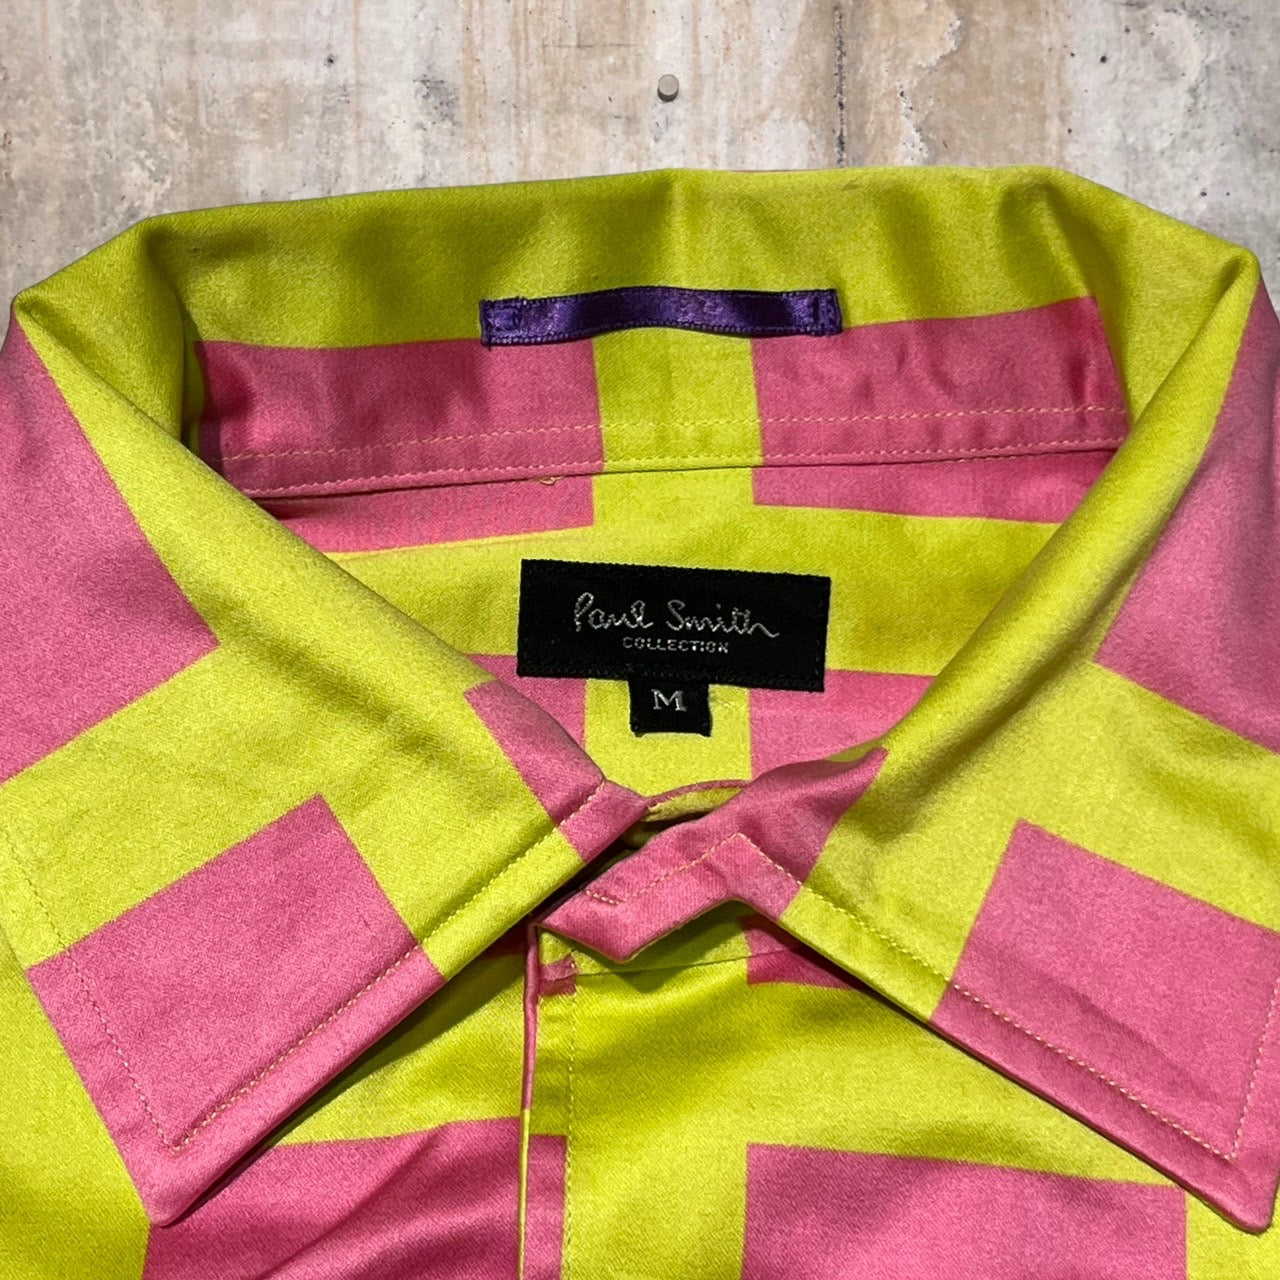 PAUL SMITH COLLECTION(ポールスミスコレクション) レギュラーカラーチェックシャツ M ピンク